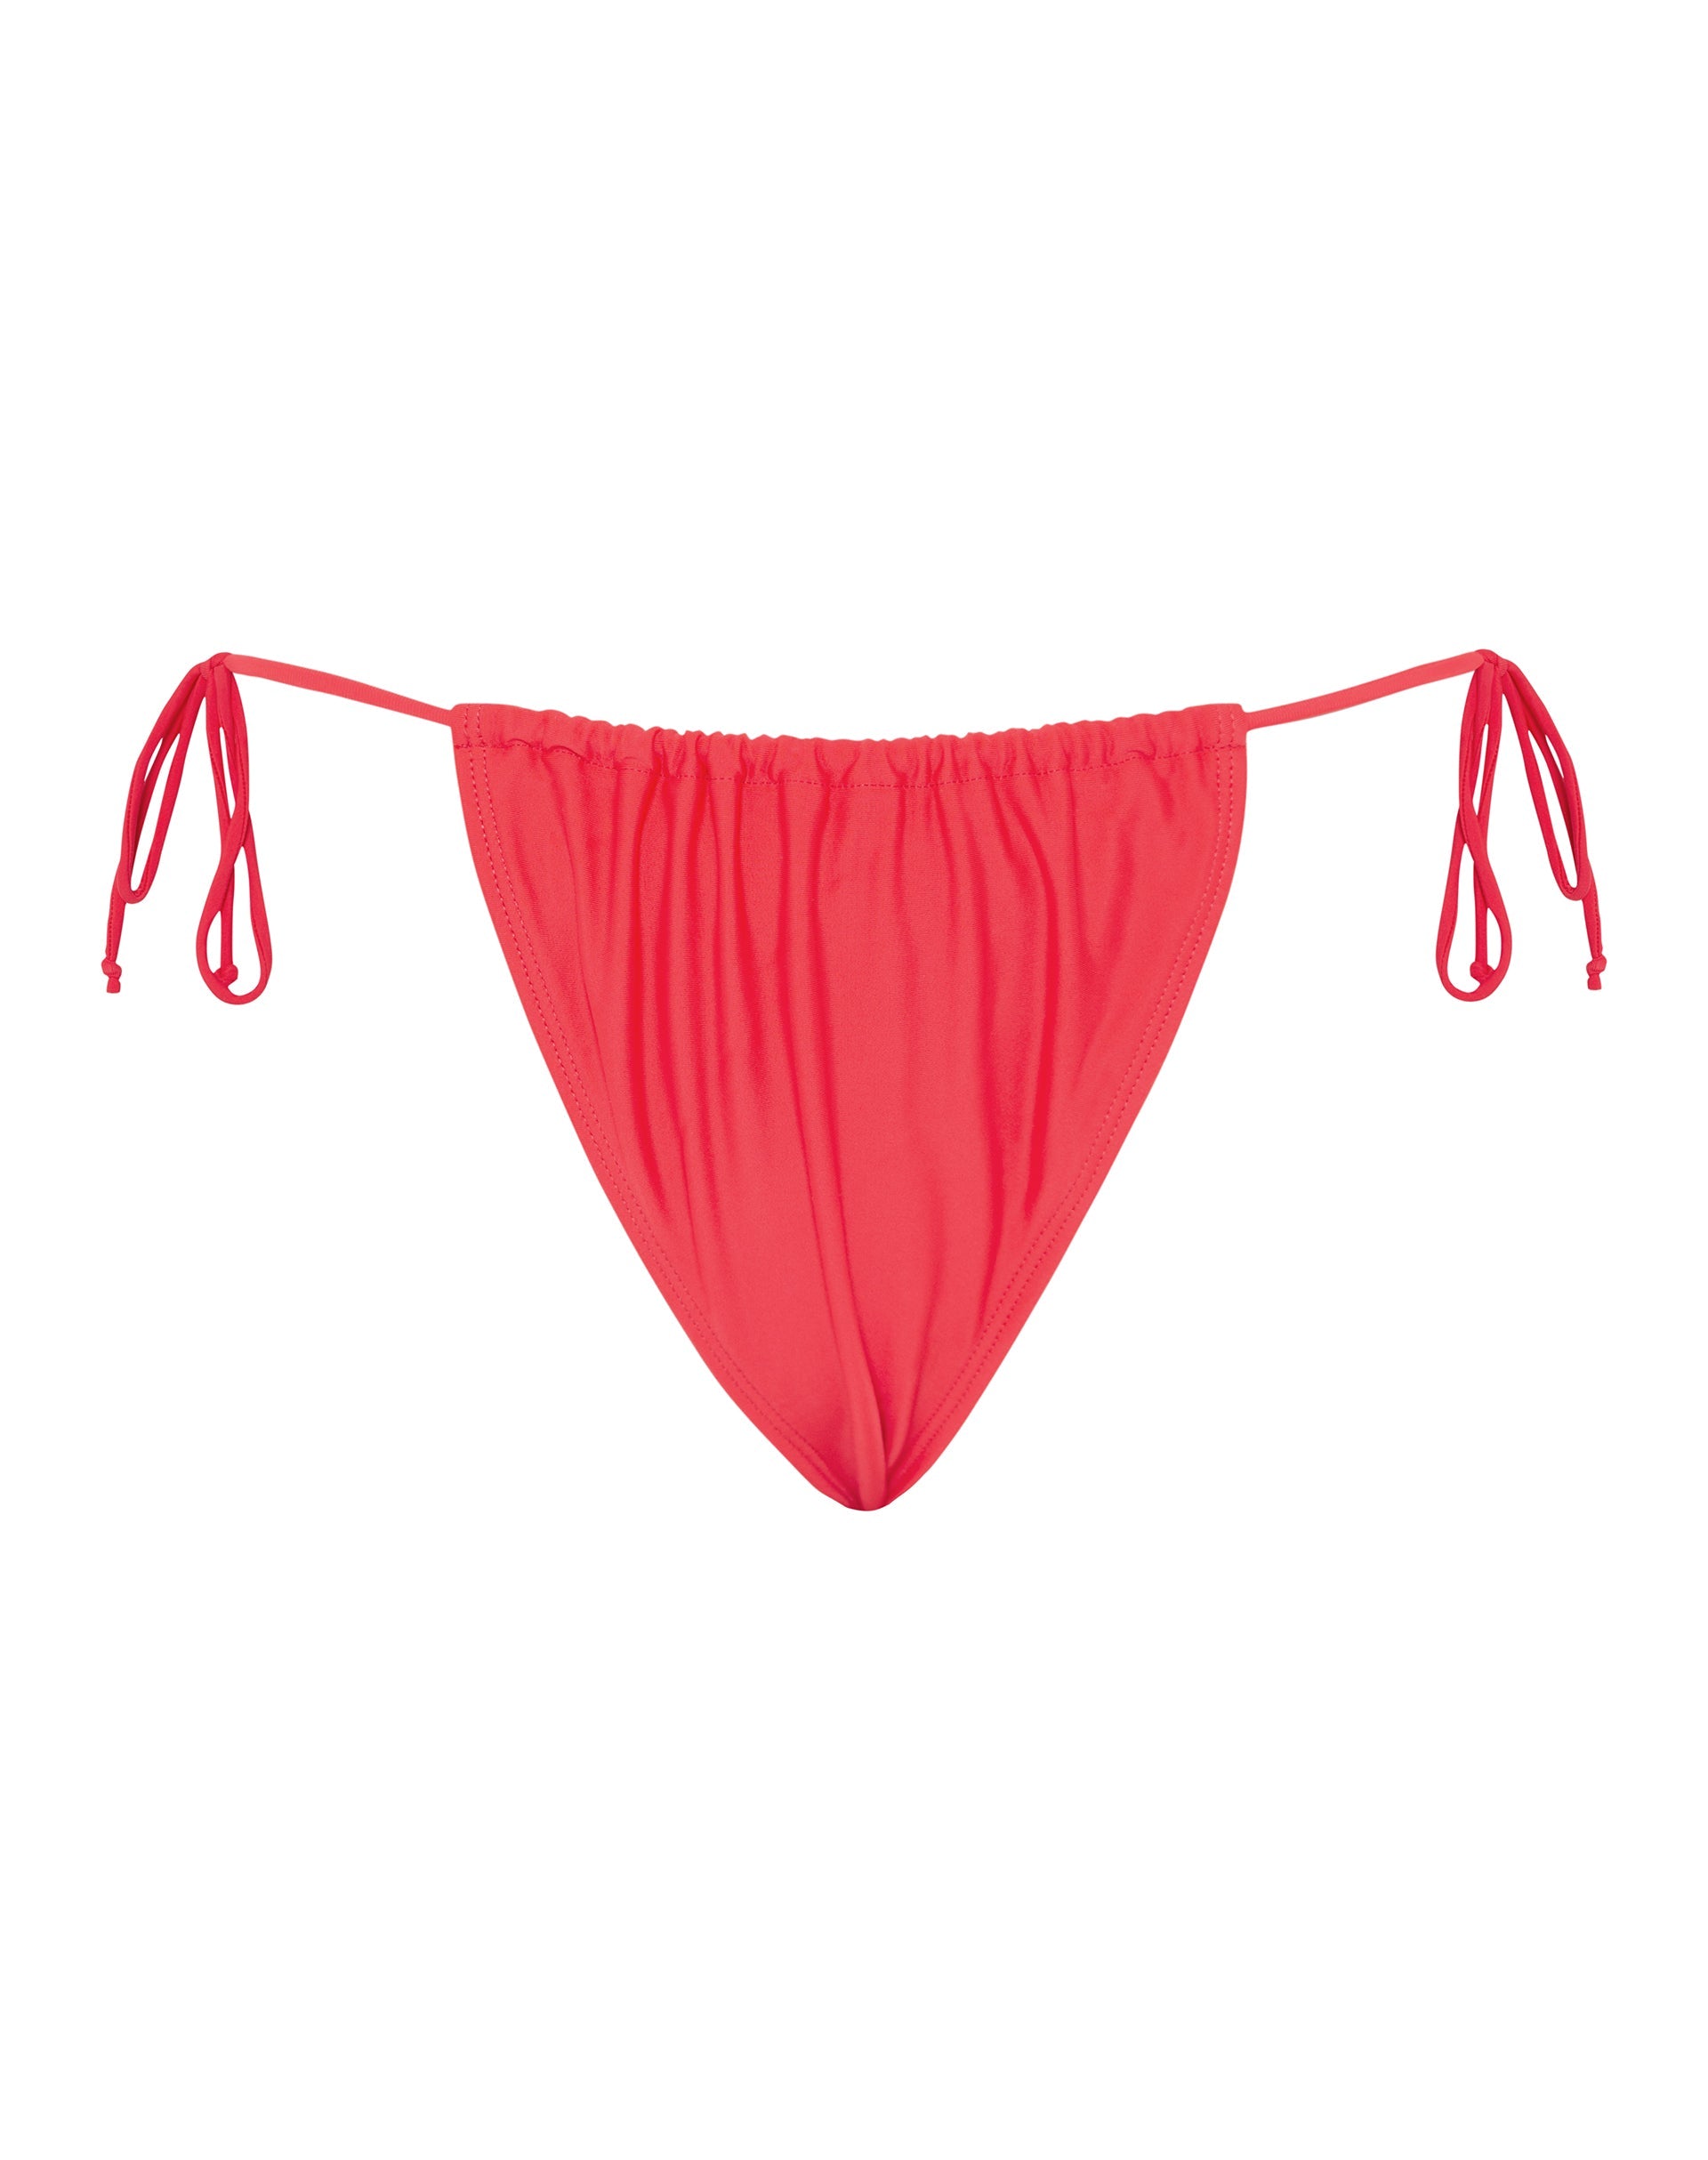 Image de la culotte de bikini Leyna en rouge écarlate